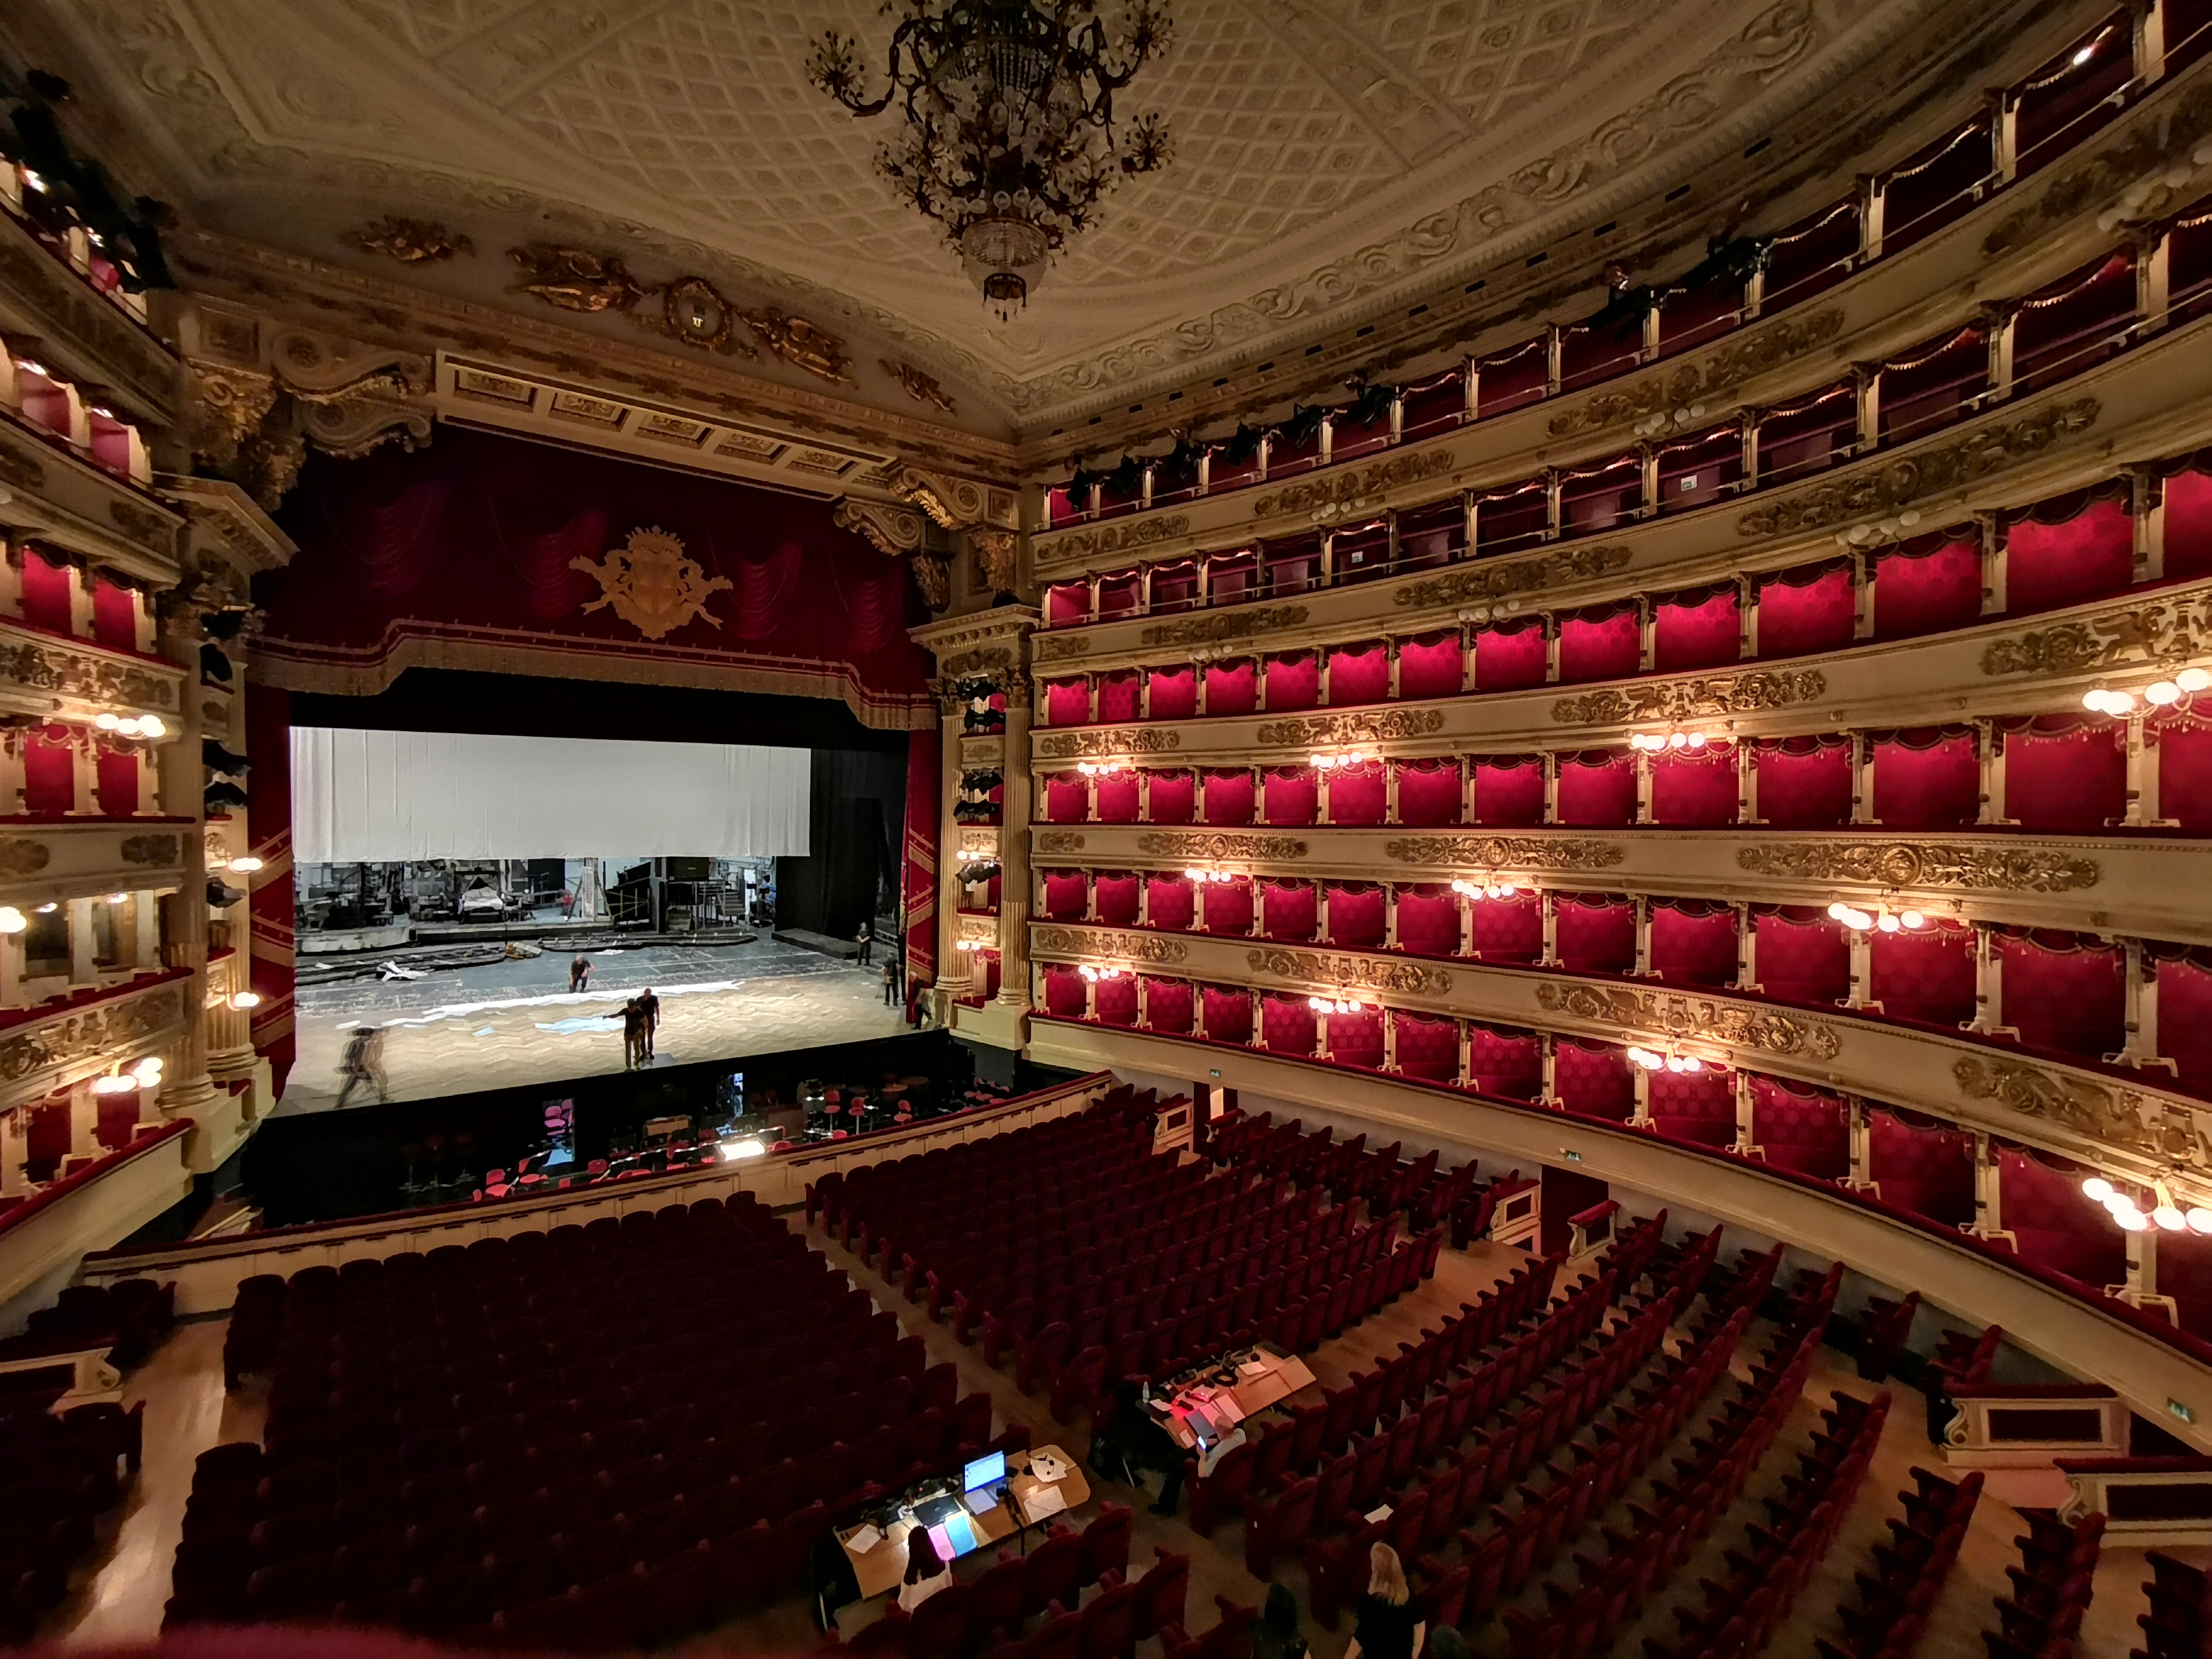 Названия известных театров. Ла скала театр. Зал театра ла скала. Сцена ла скала. Опера ла скала в Милане.